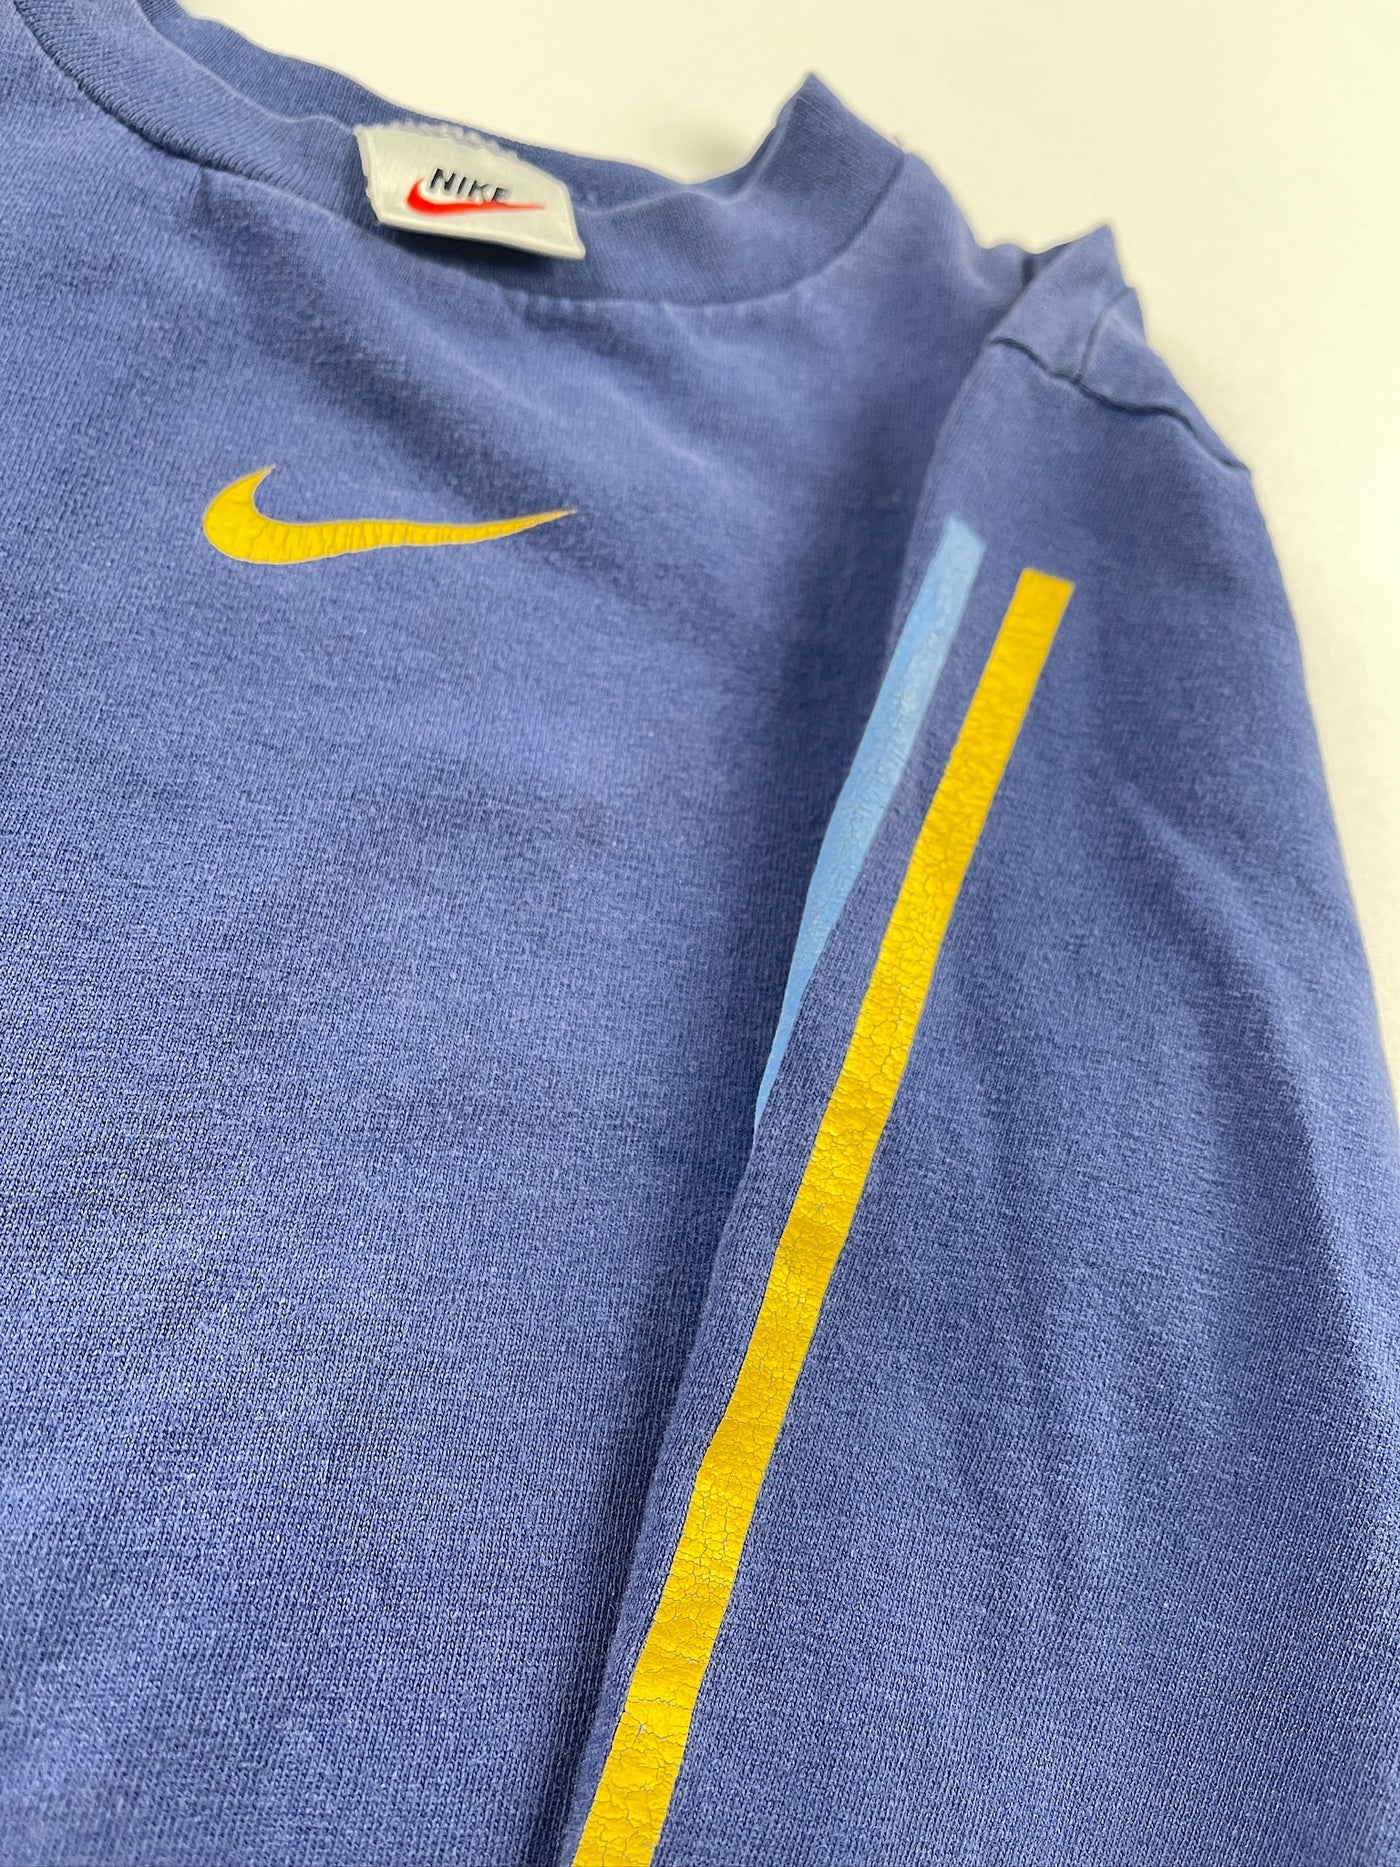 Vintage Nike Long Sleeve 5T